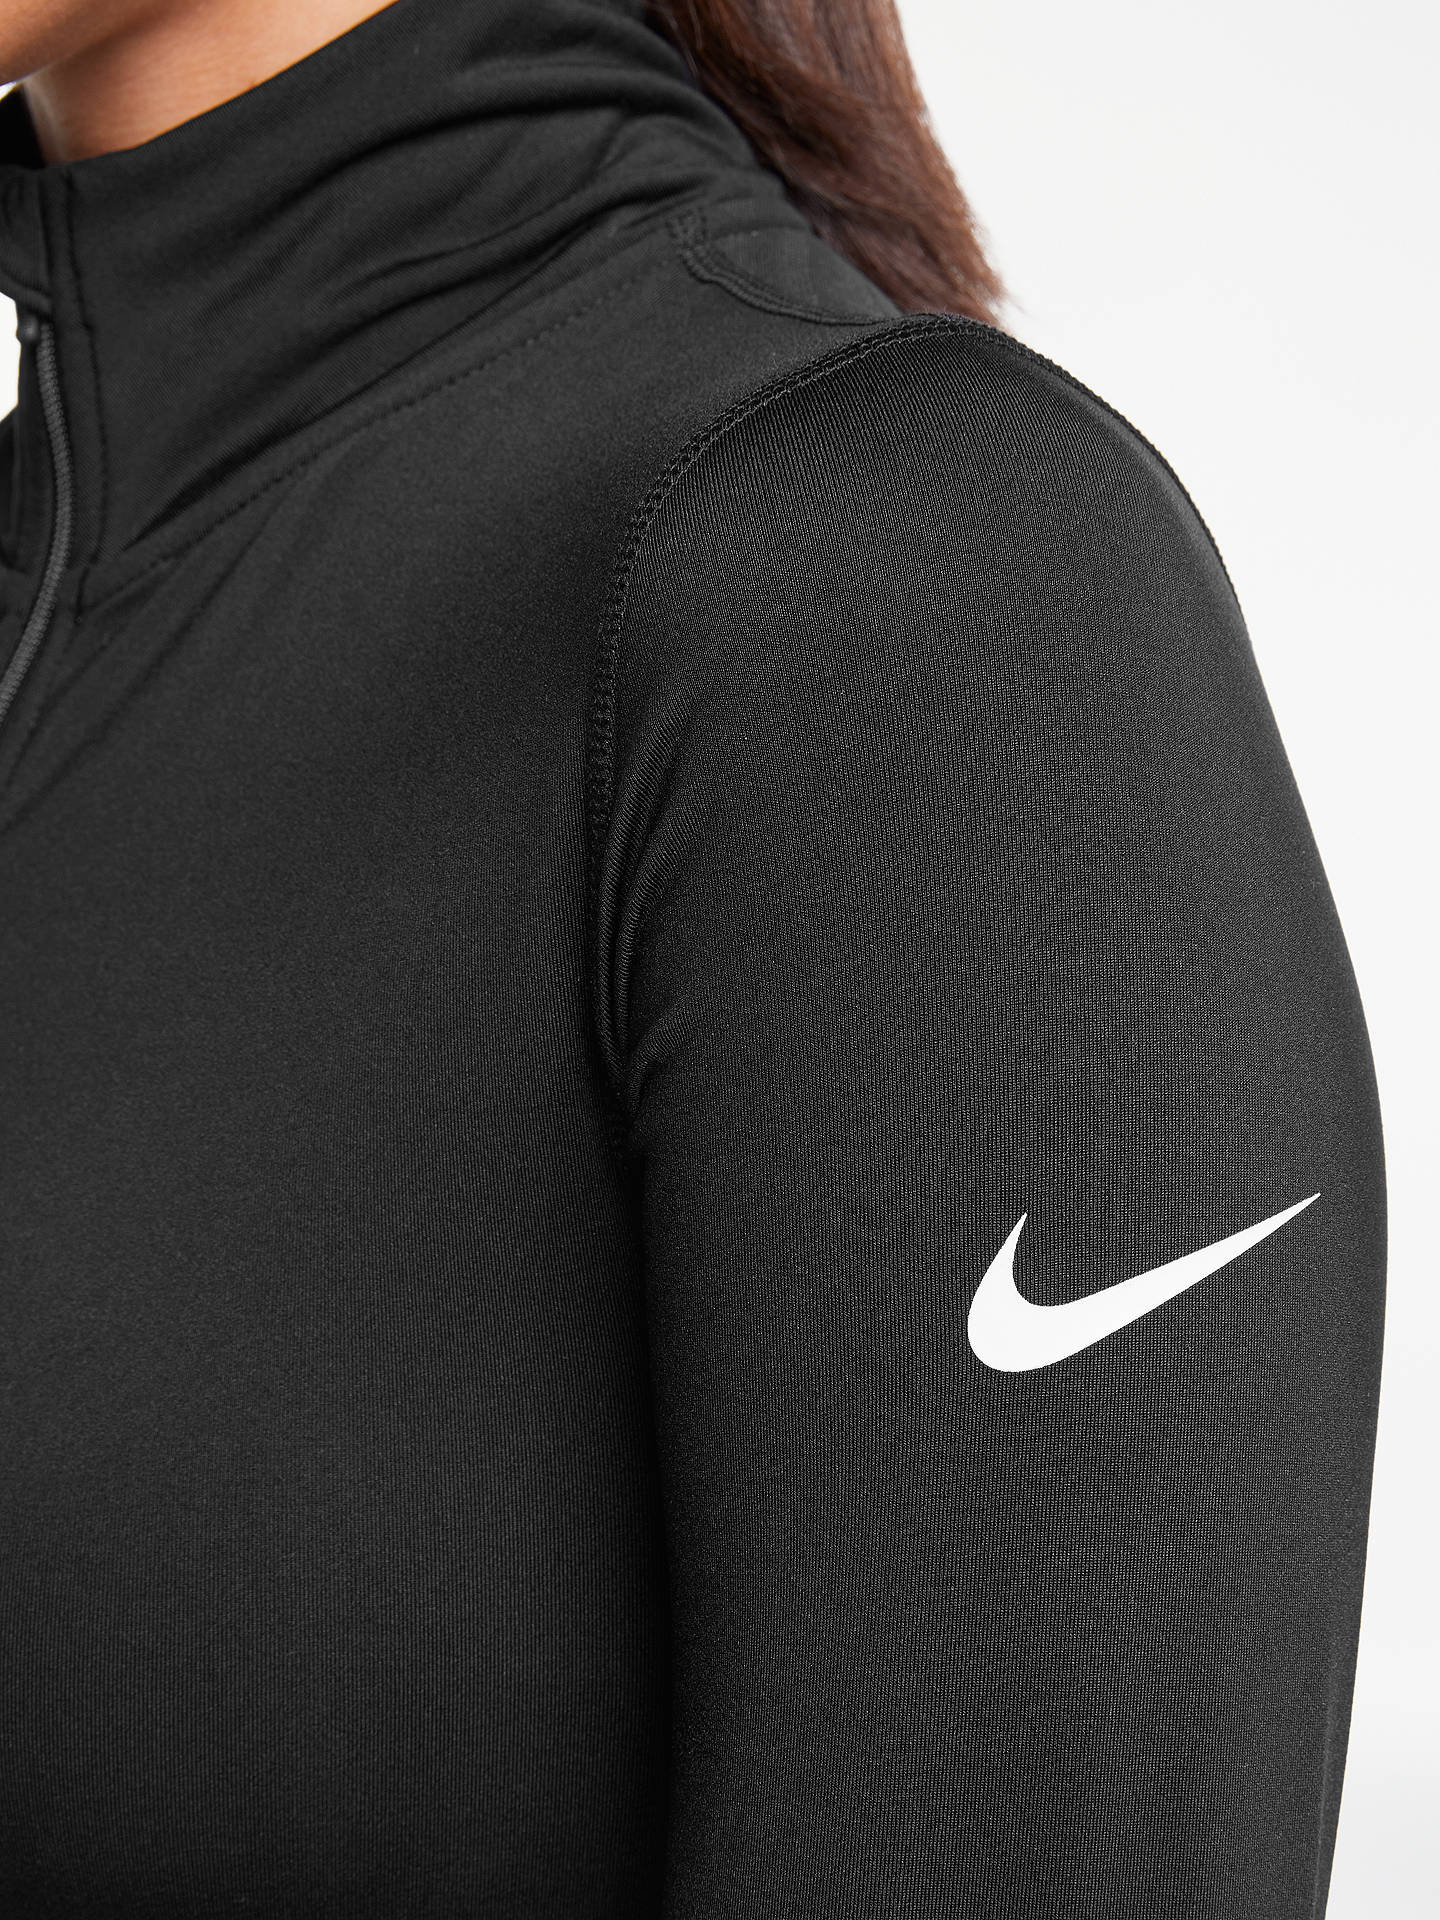 Nike Pro Warm Half Zip Training Top, Black at John Lewis & Partners